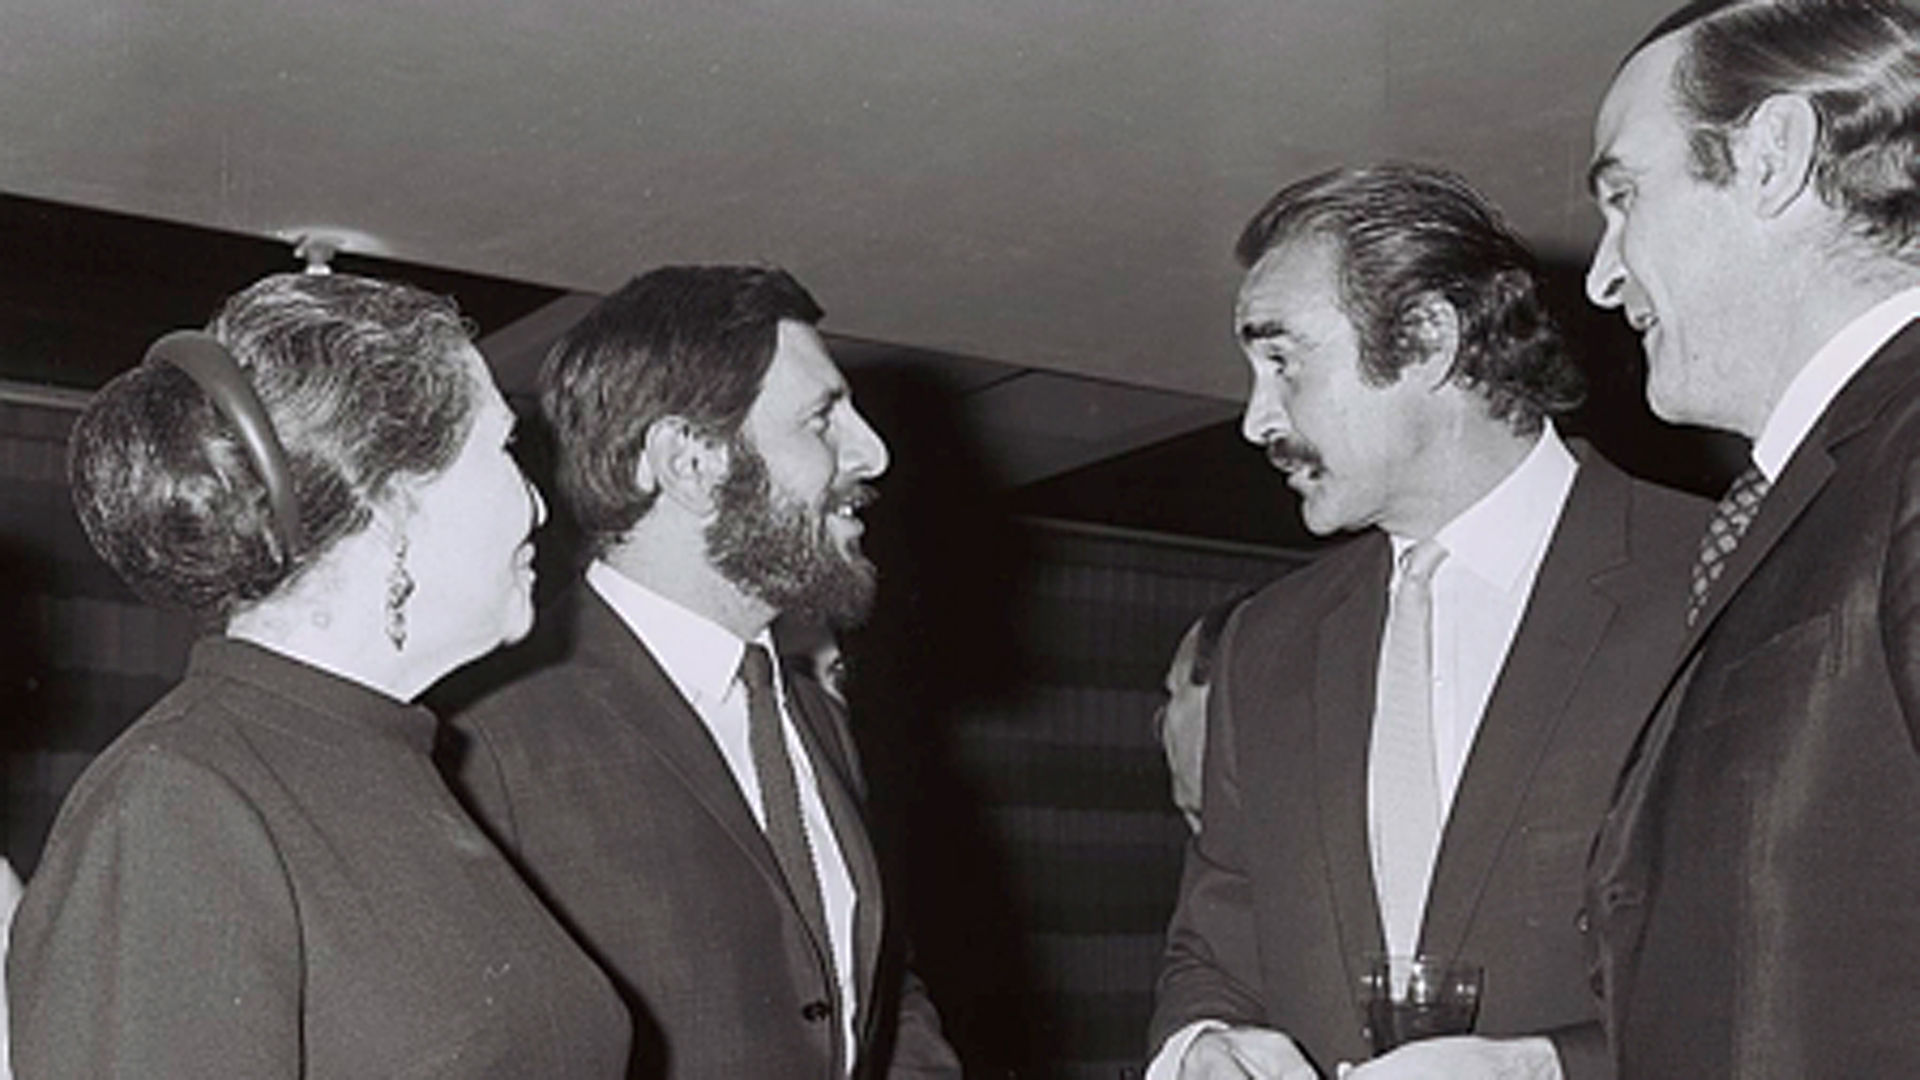 Bond-Darsteller Connery (2. v. r.) auf einer Gala in Tel Aviv am 5. November 1967 mit dem israelischen Schauspieler Topol (3. v. r.)